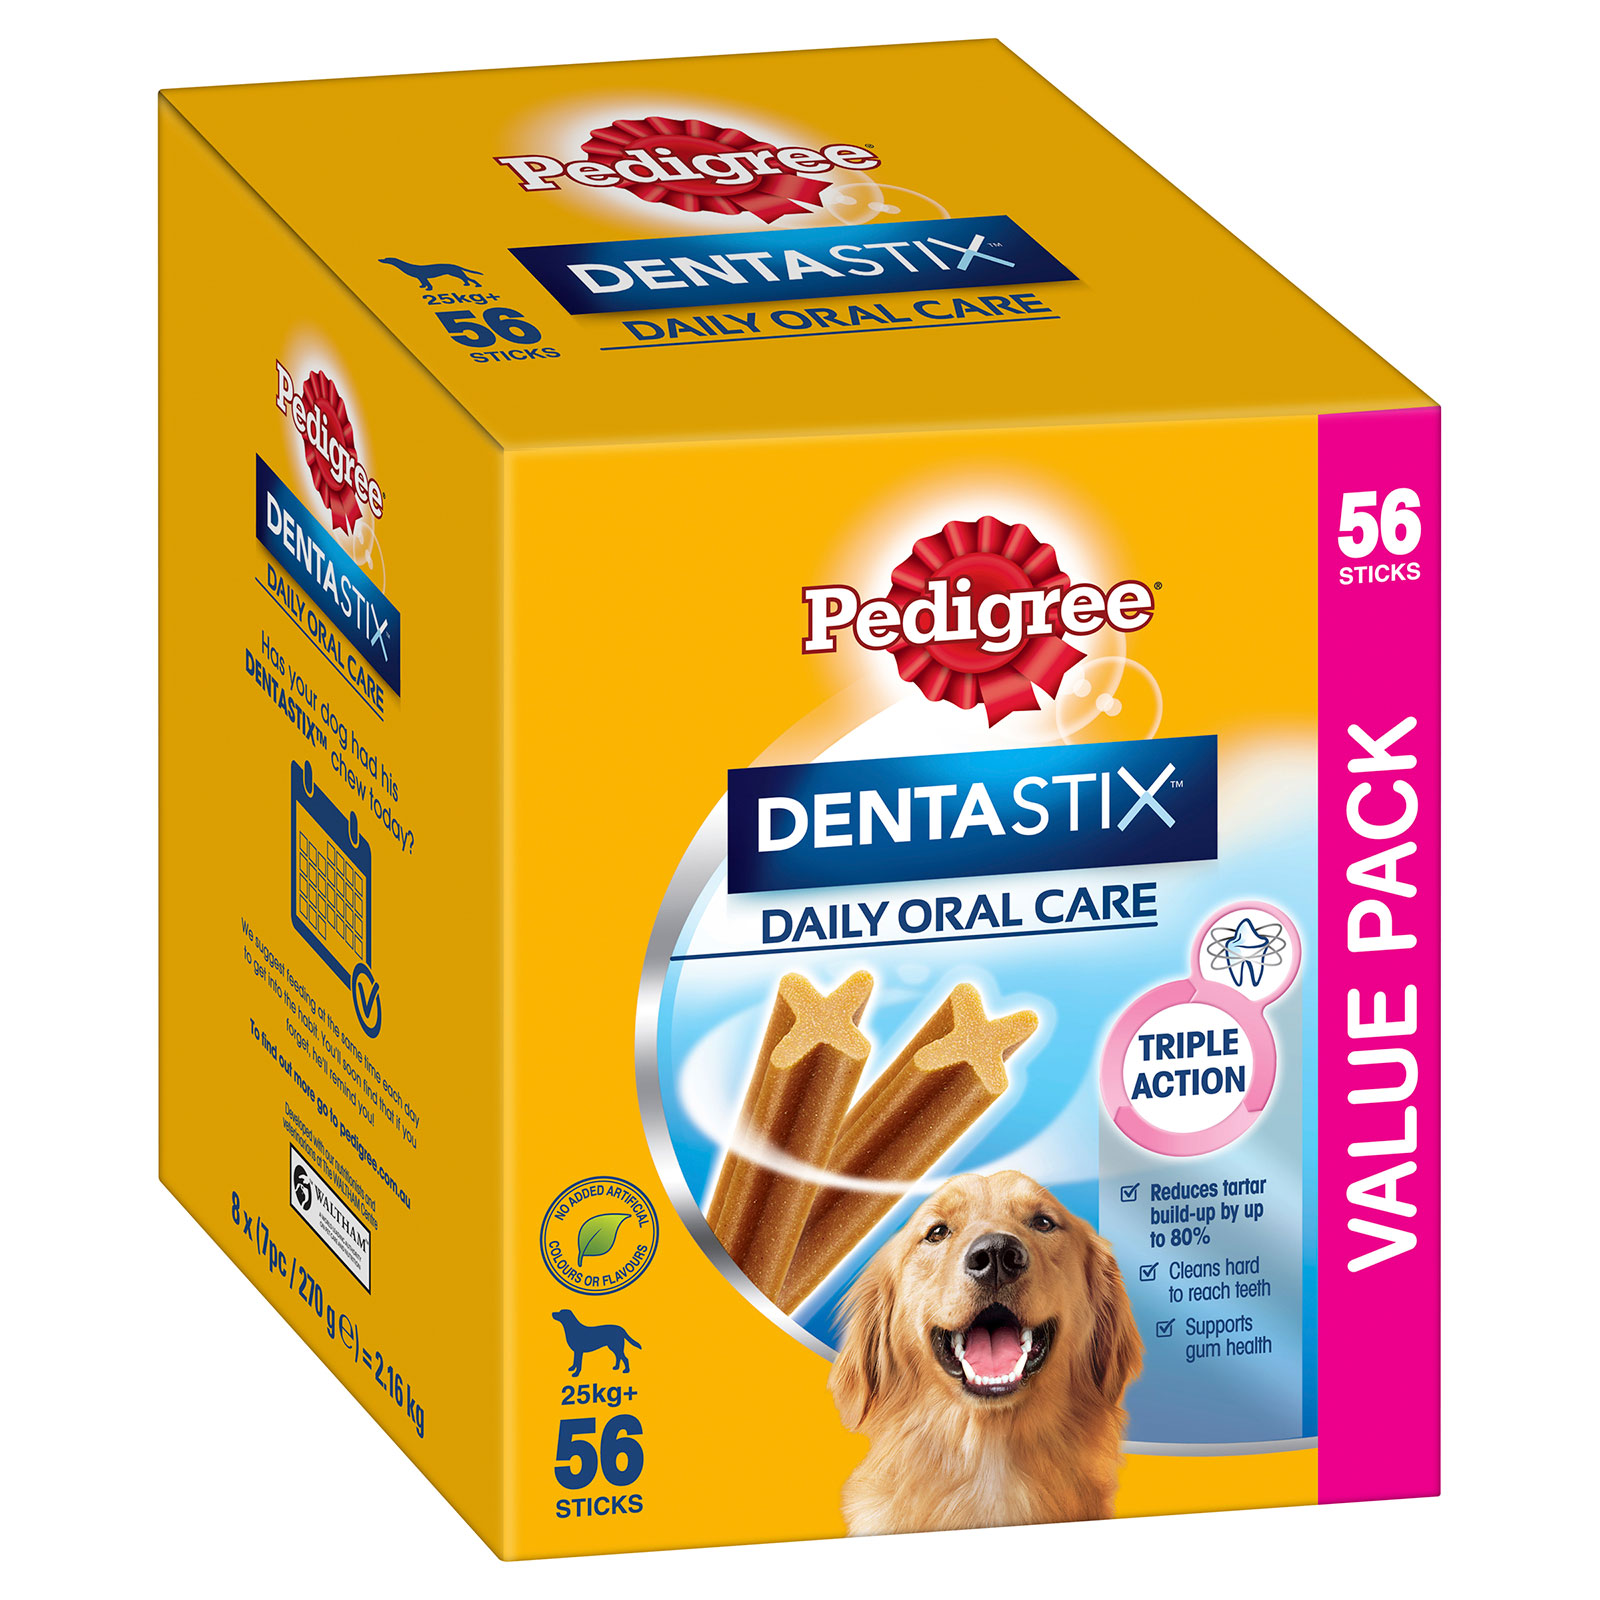 are dentastix safe in dog crate